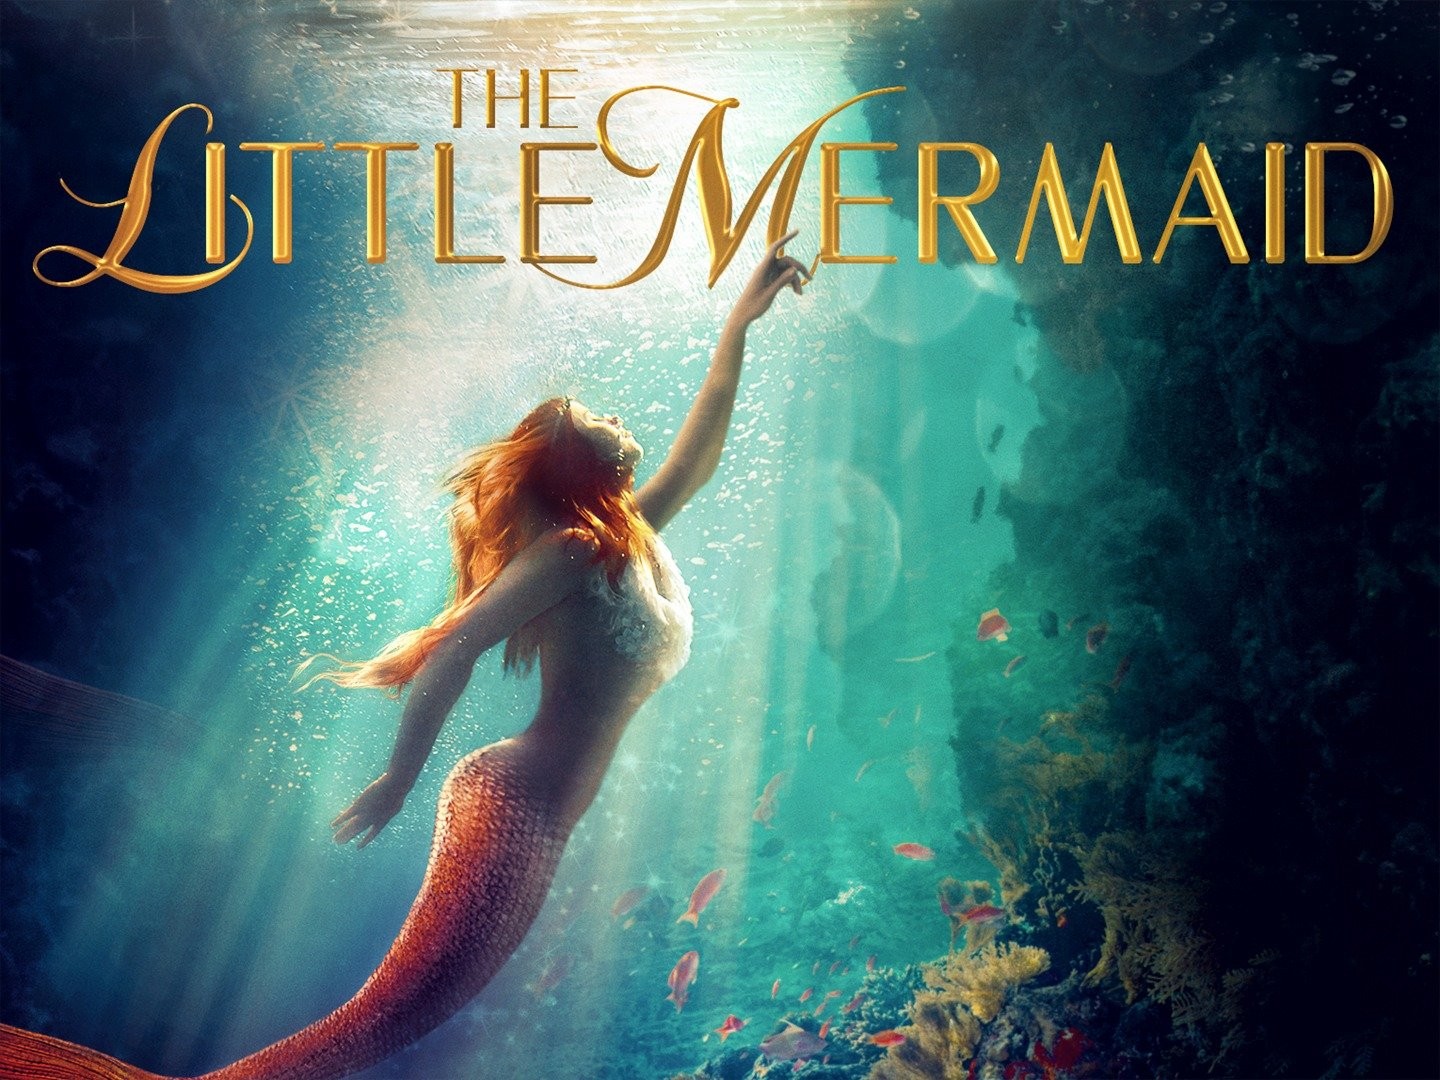 The Little Mermaid (2018) - IMDb